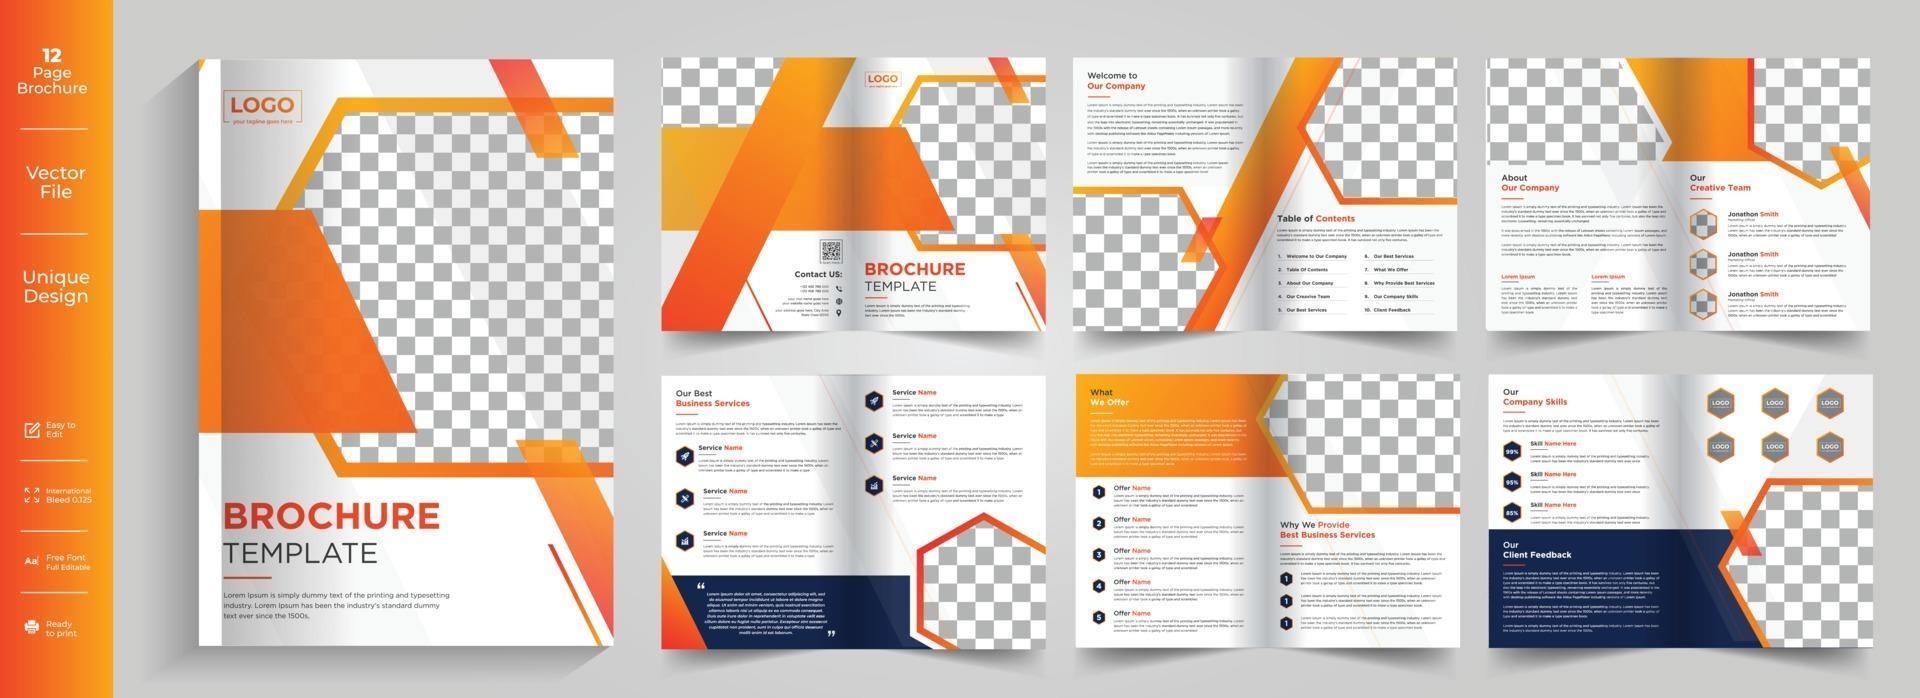 thème d'entreprise 12 pages conception de brochure de profil d'entreprise entreprise 8 pages conception de modèle de brochure d'entreprise créative vecteur